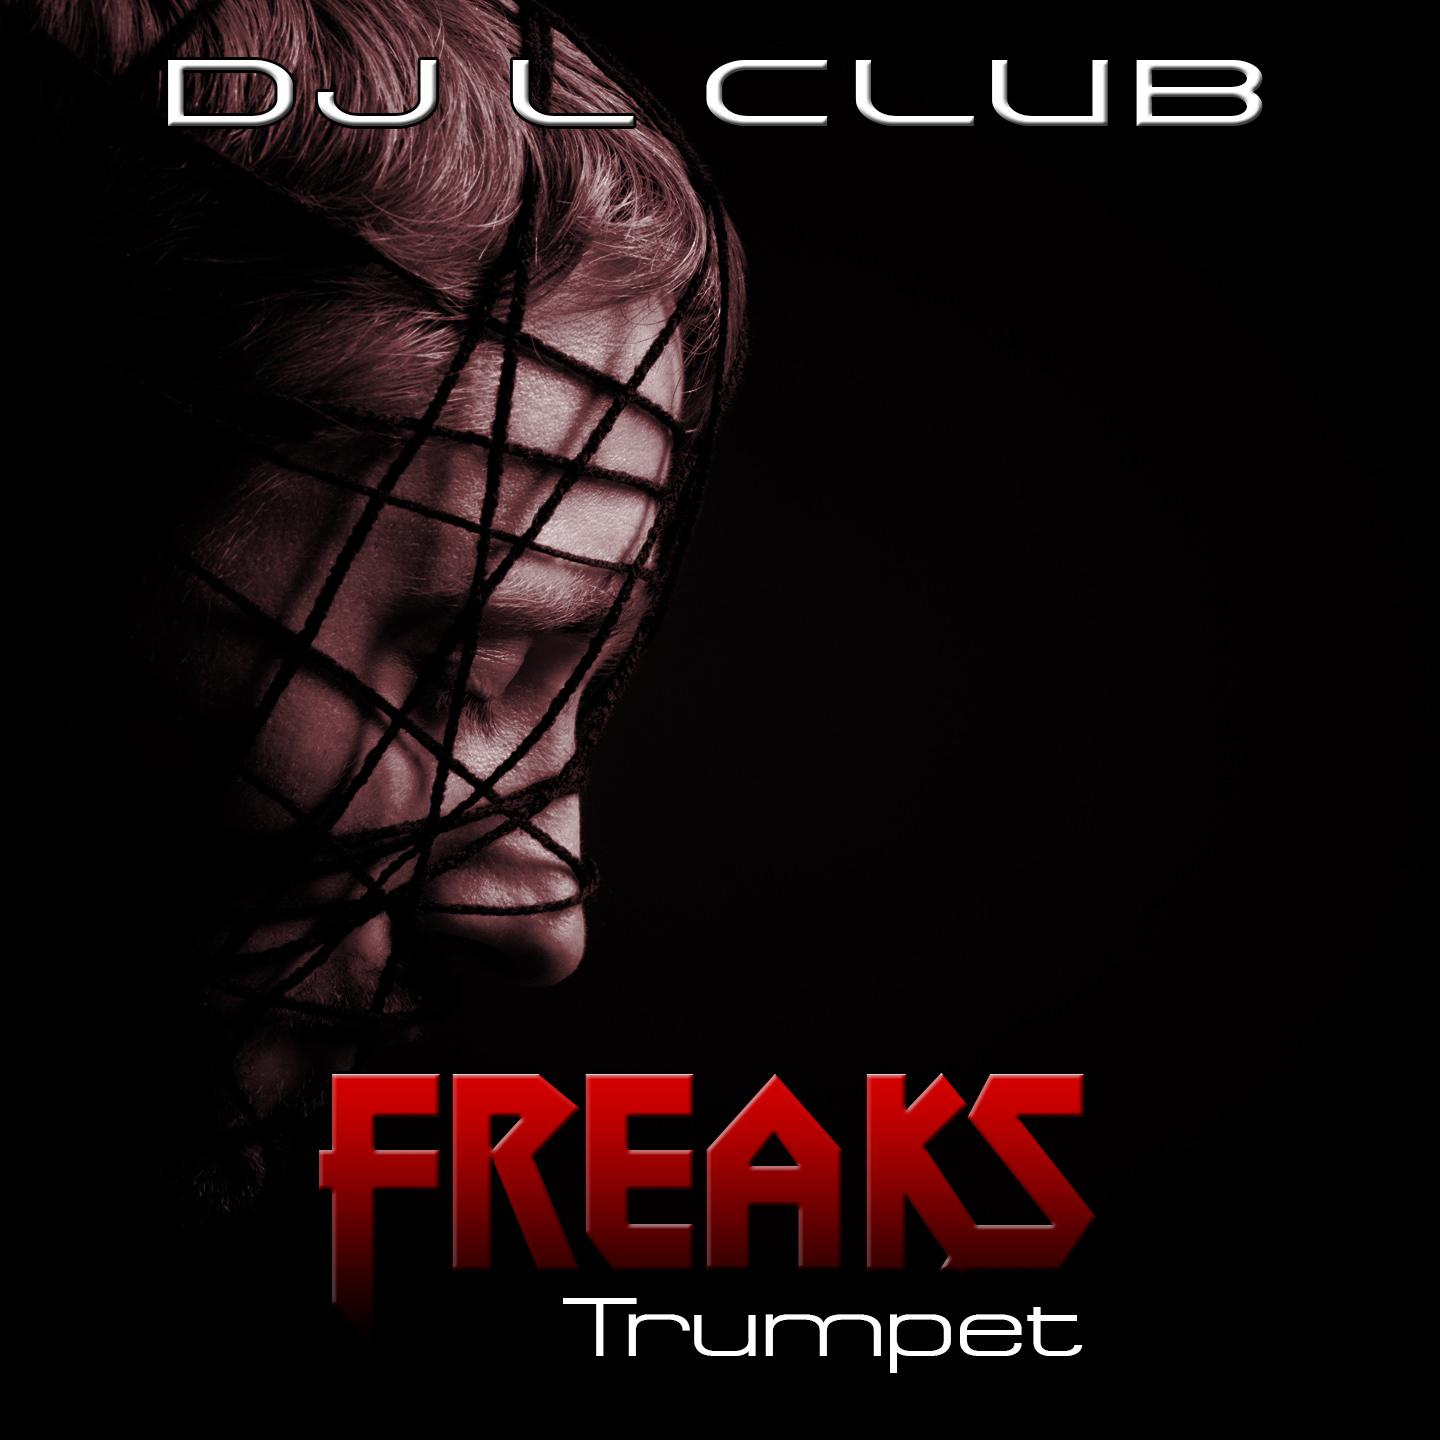 Freaks обложка альбома. Freaks (MP Mix). L Club. Freaks песня.